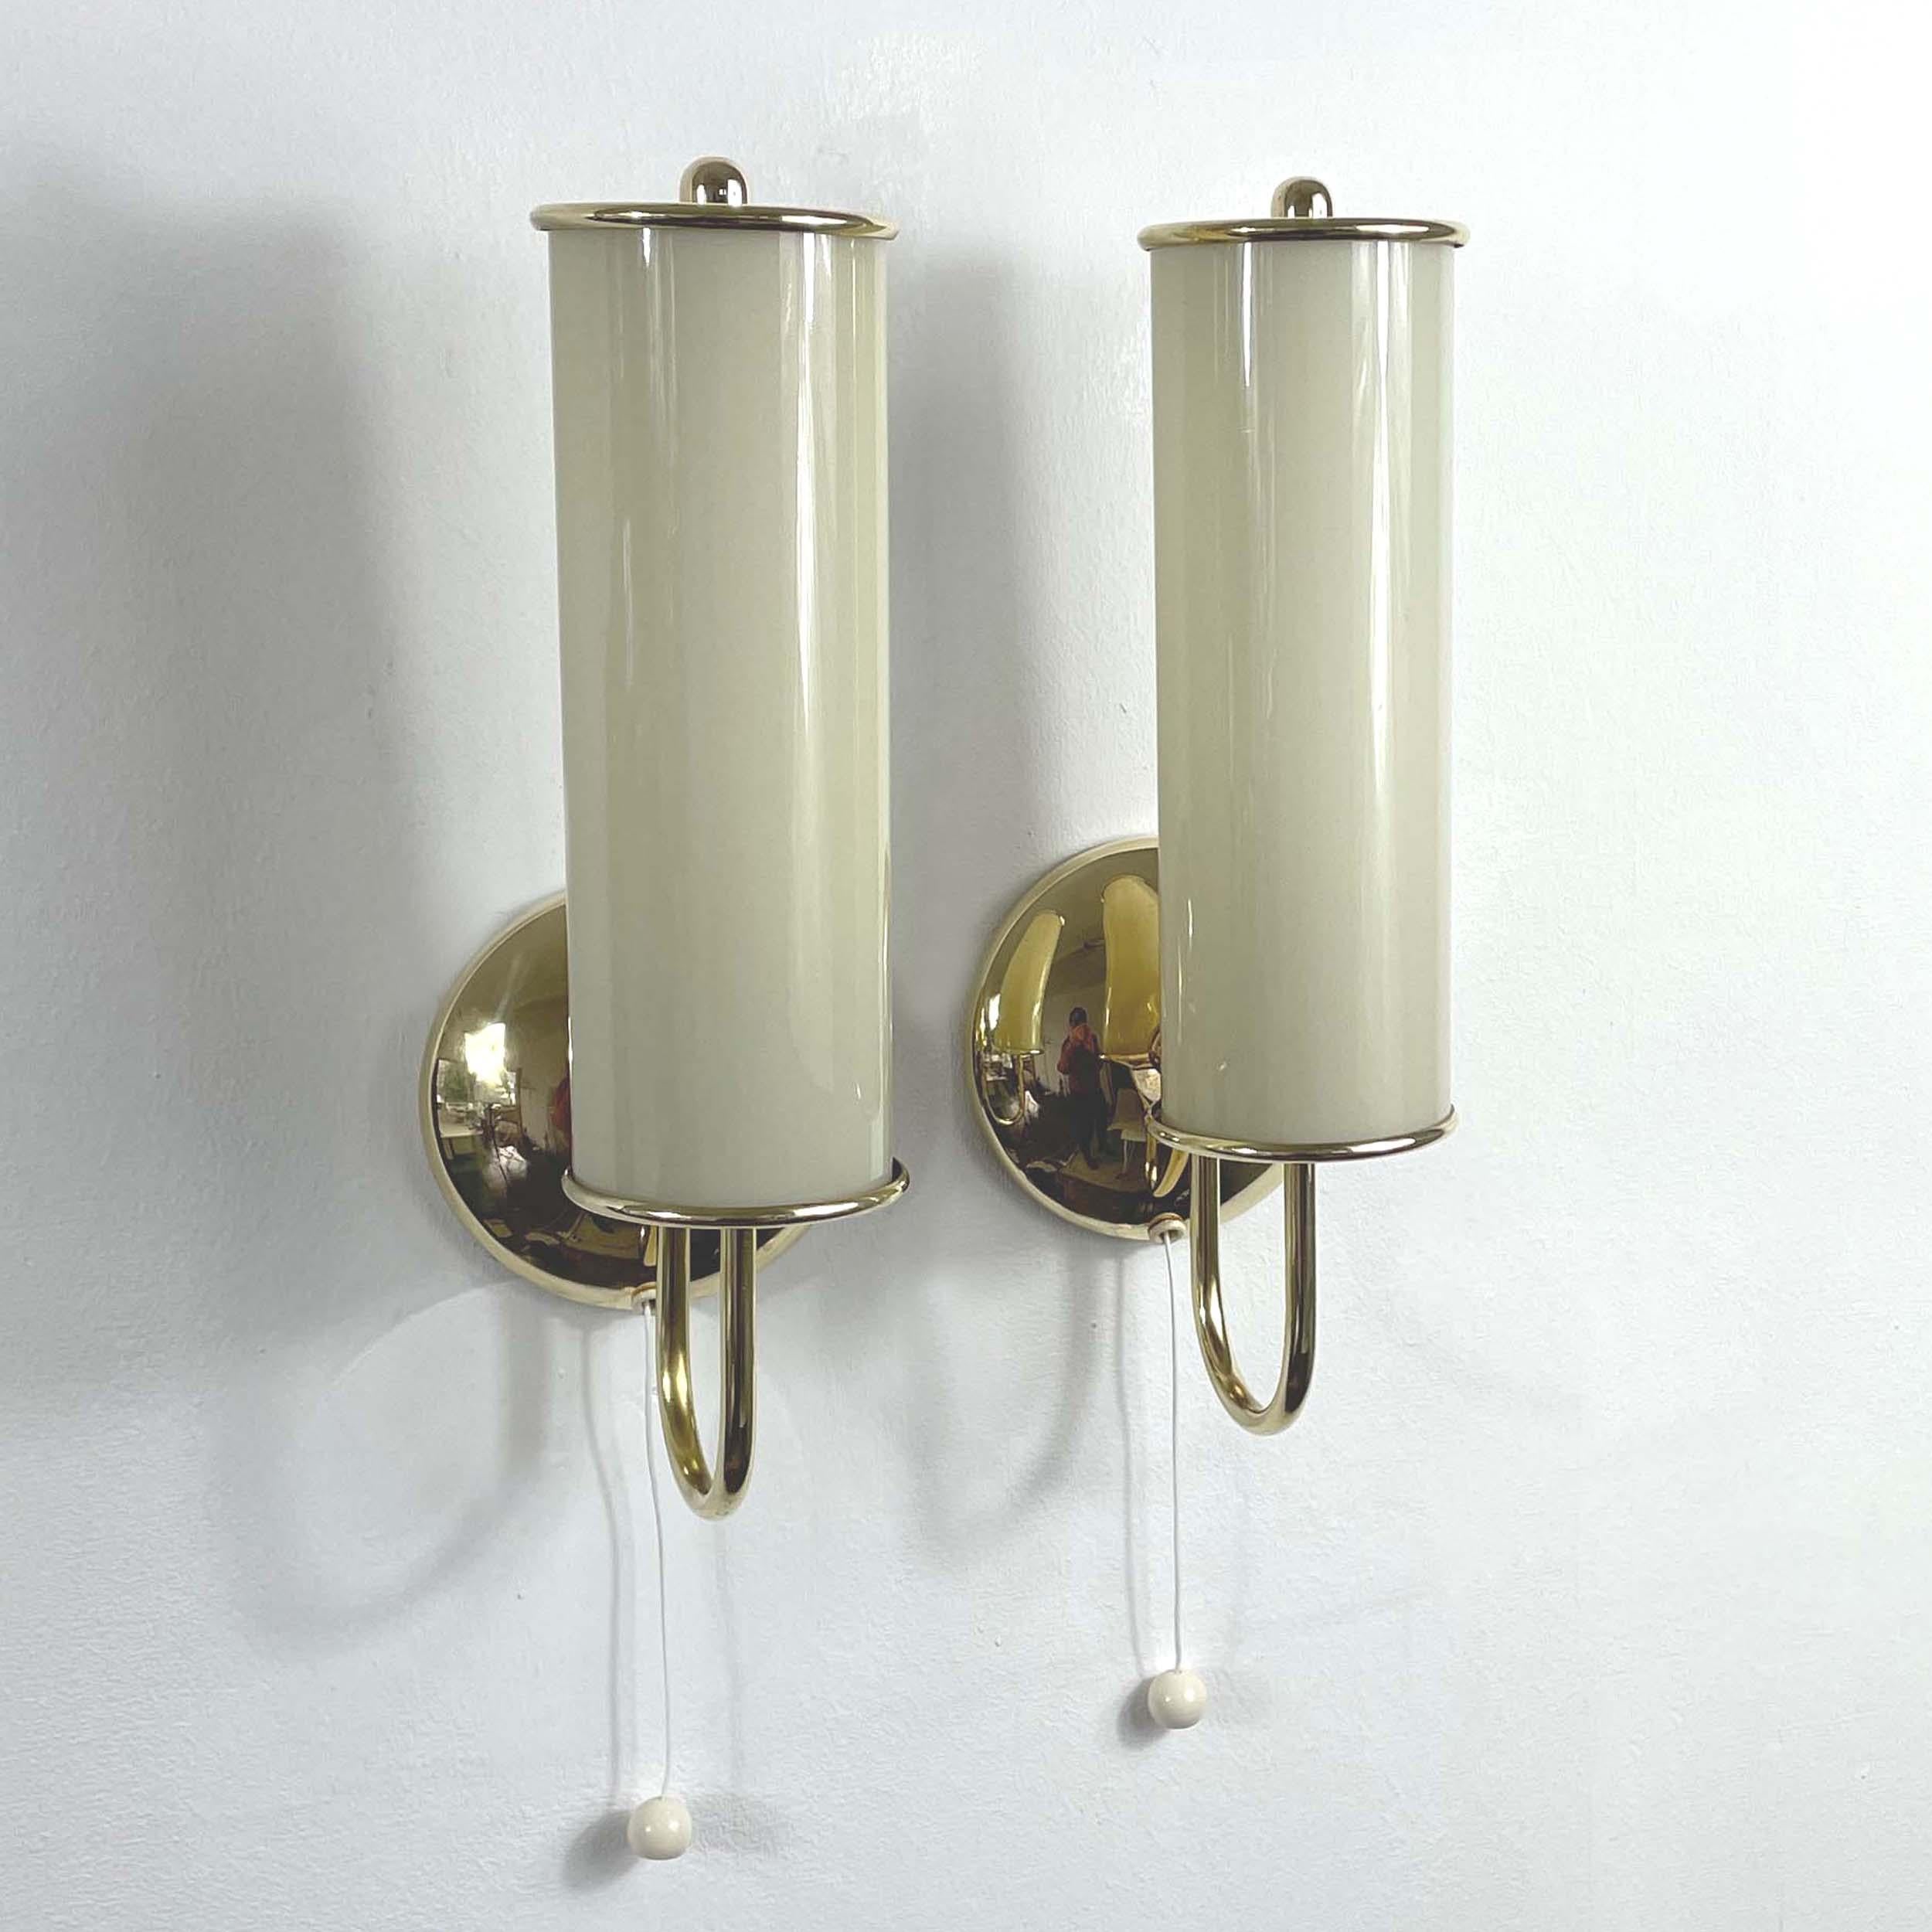 Art Deco Tubular Opaline Glass & Brass Sconces, Germany 1930s For Sale 9